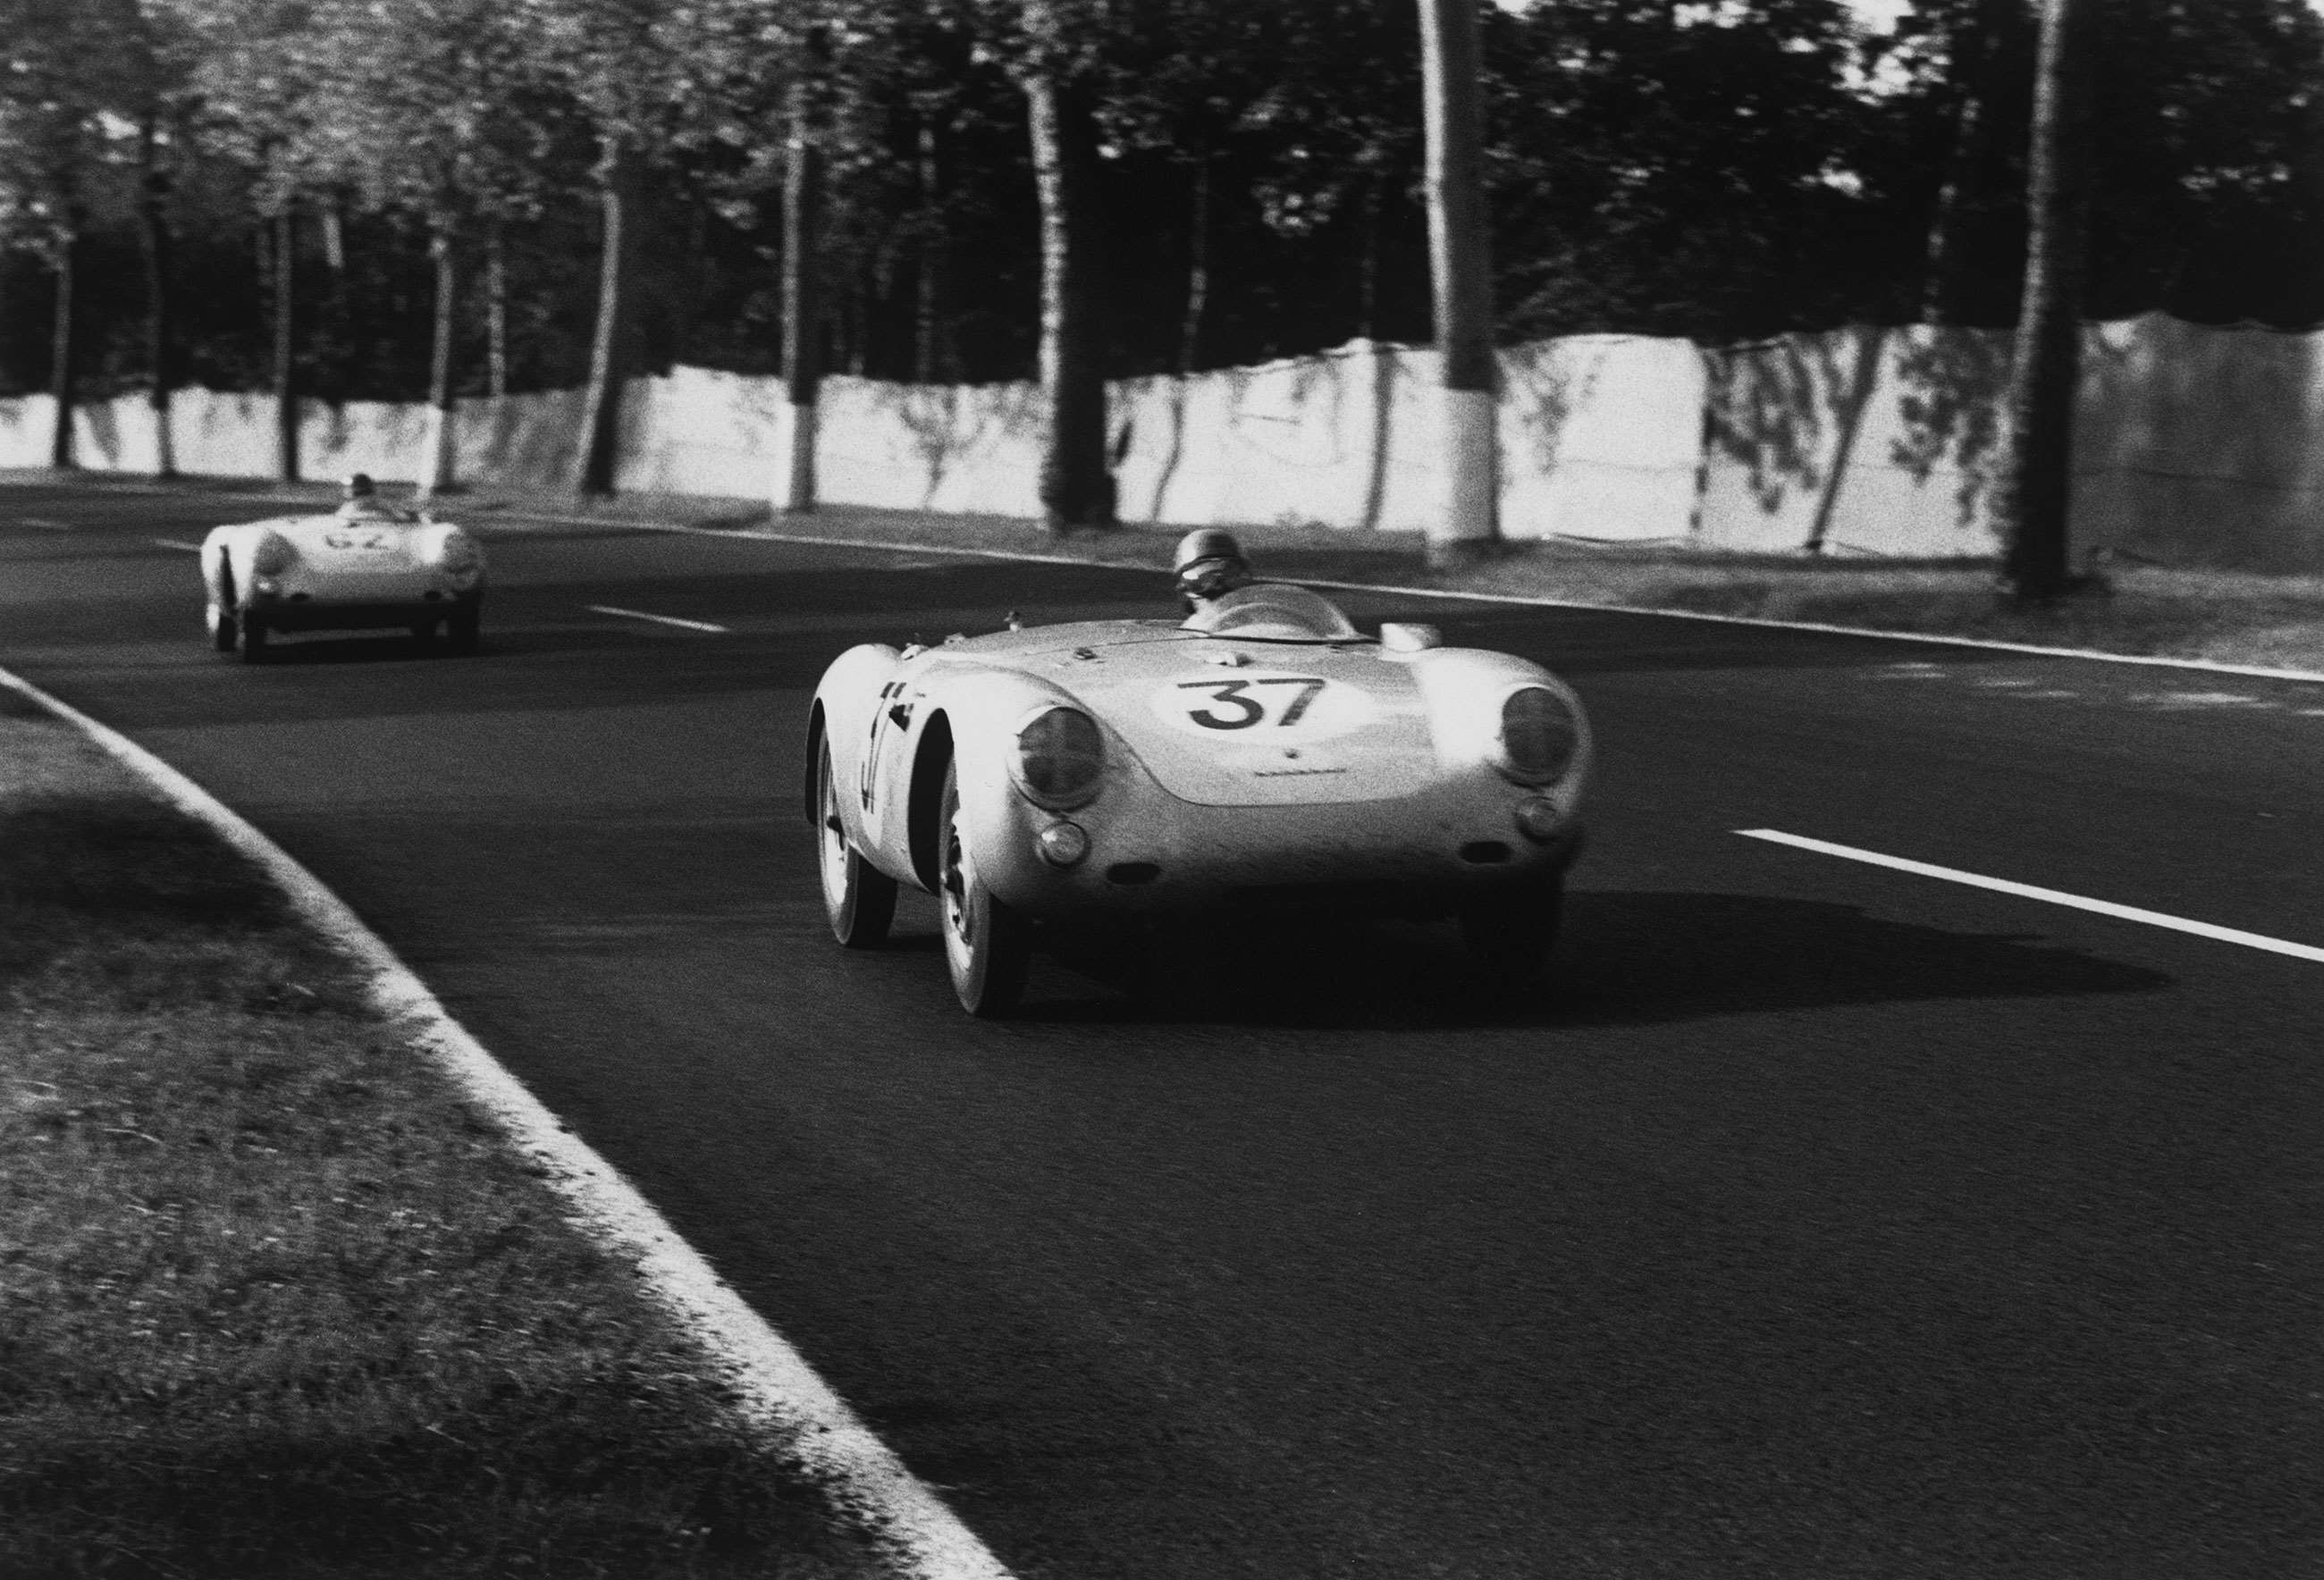 best-racing-porsches-1-porsche-550-spyder-polensky-von-frankenberg-le-mans-1955-mi-goodwood-03072020.jpg